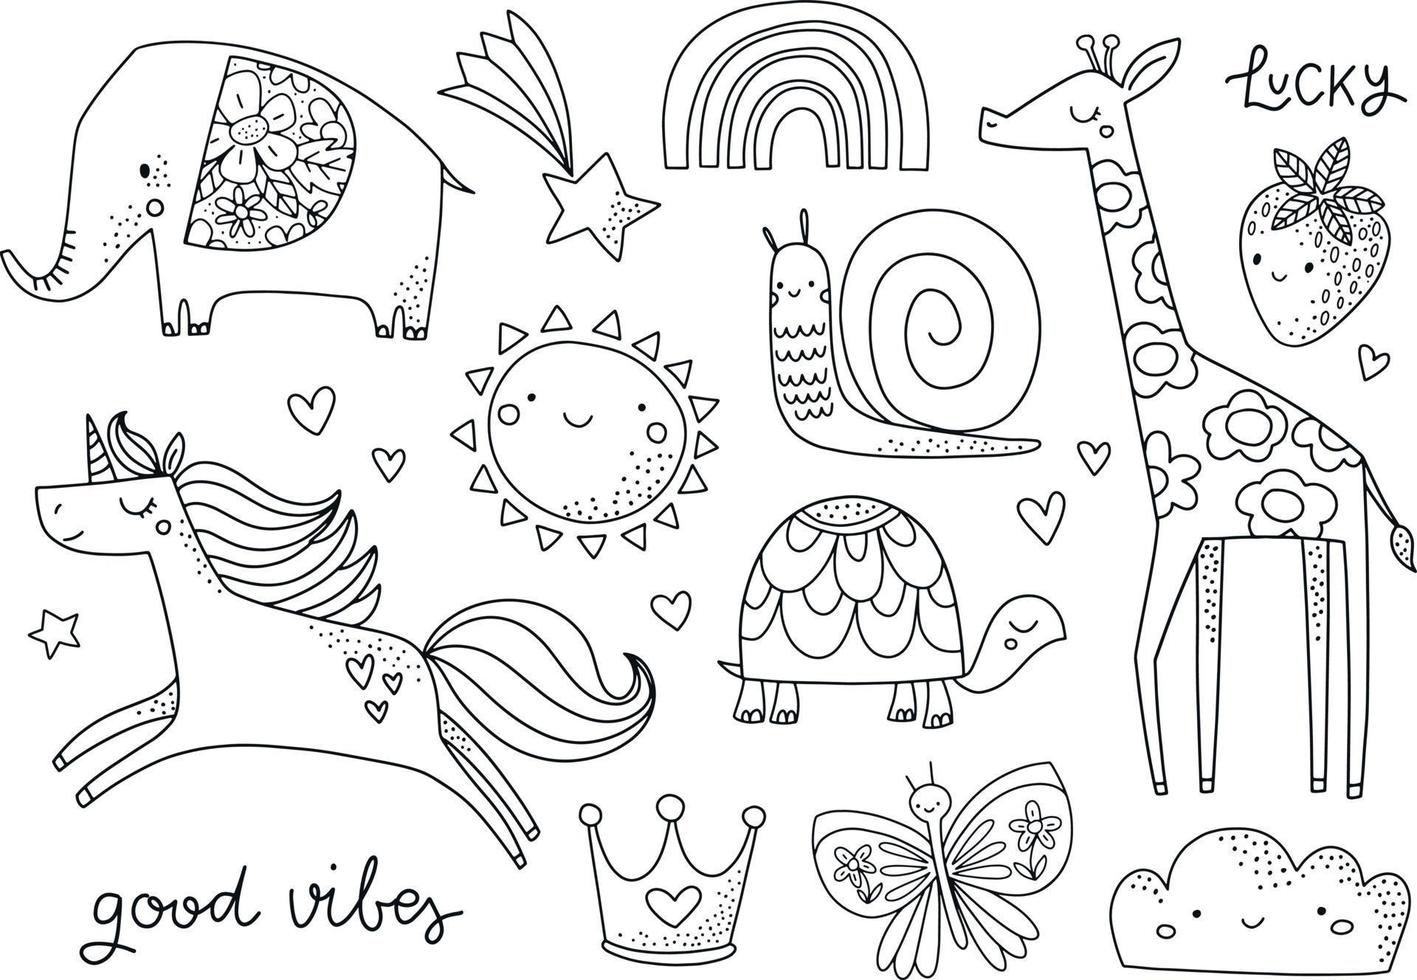 süße handgezeichnete kindliche illustration in schwarz und weiß. kinder malvorlagen. tier, märchen, sommerfiguren für kinder und baby. Elefant, Einhorn, Giraffe, Sonne, Regenbogen, Schnecke, Schmetterling. vektor